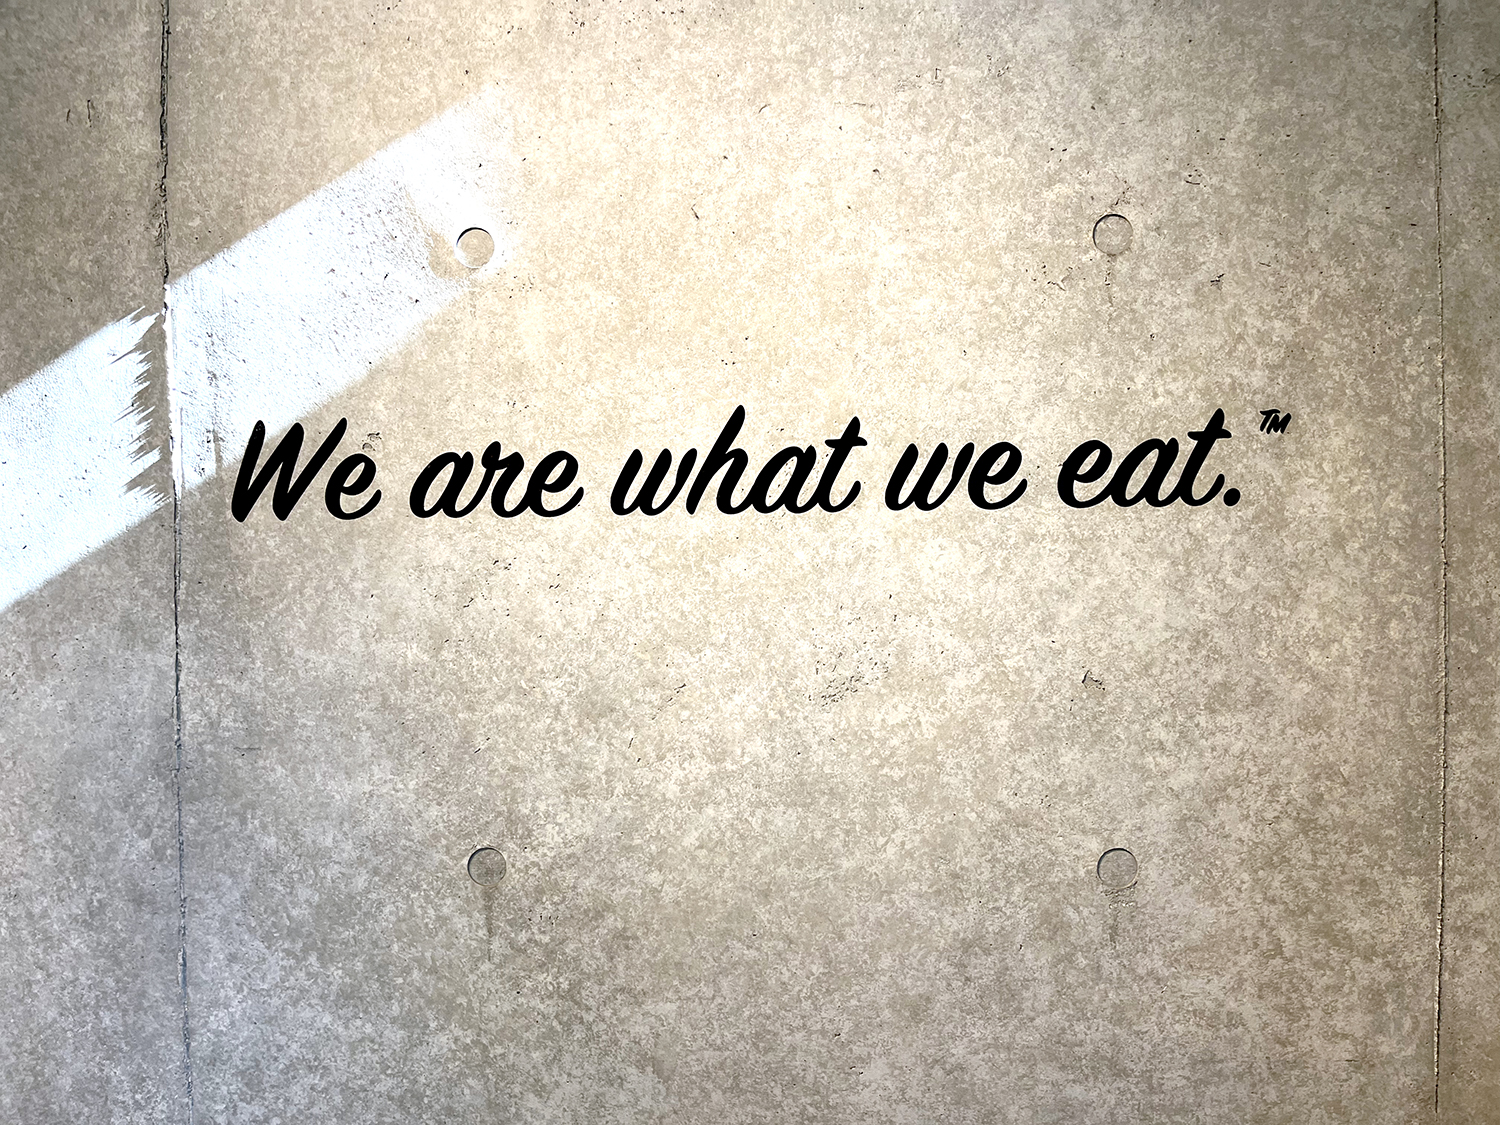 店内の壁に“人は食べたものでできている”という意味のメッセージが掲げられている。